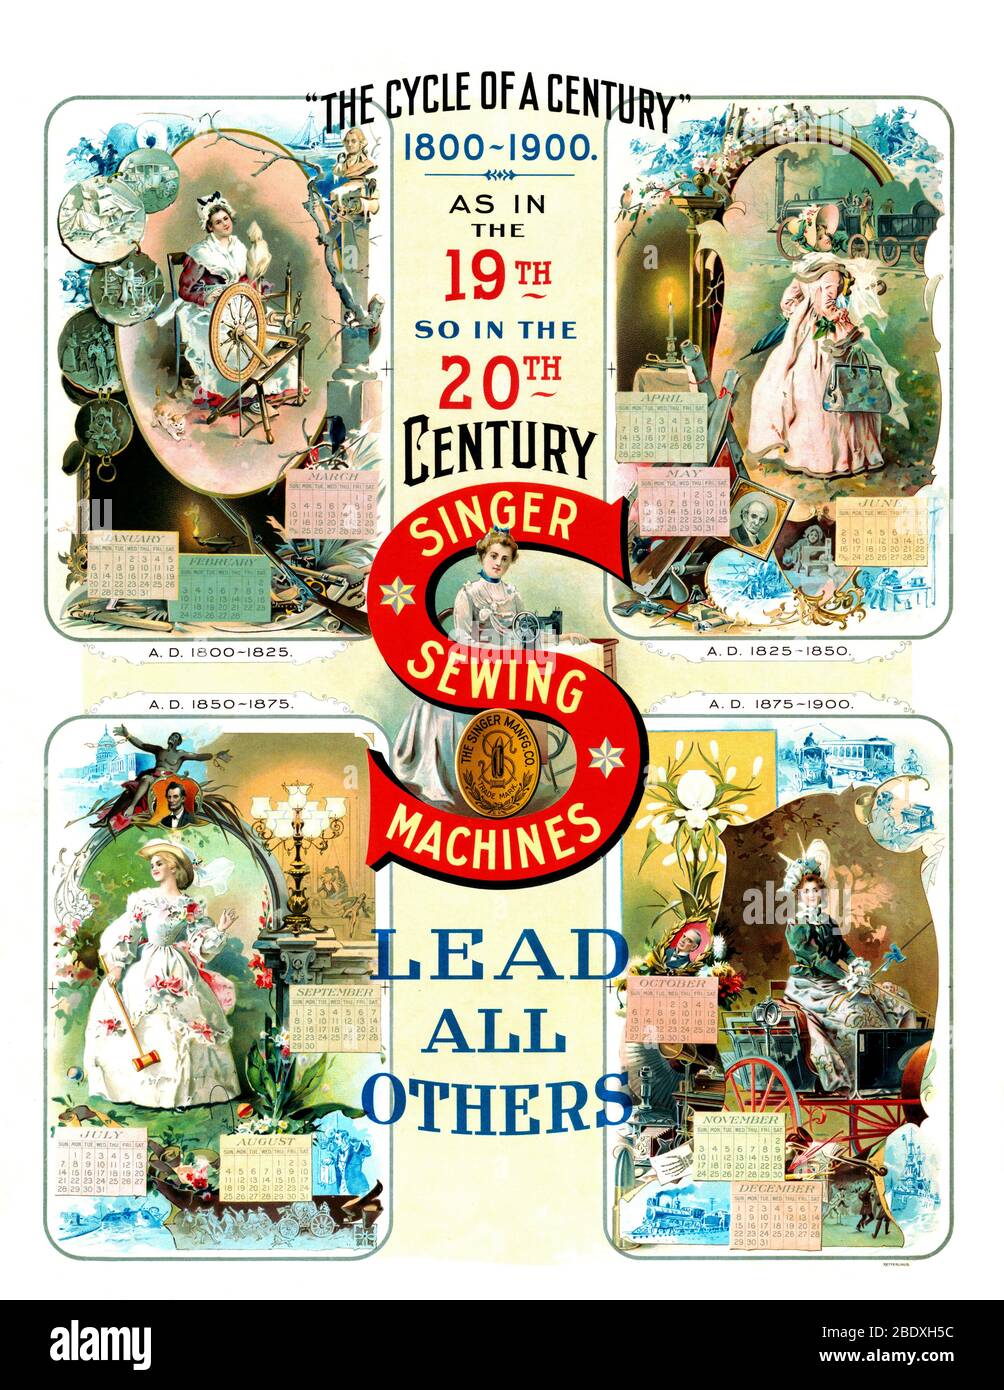 Werbung Für Singer Sewing Machine Stockfoto